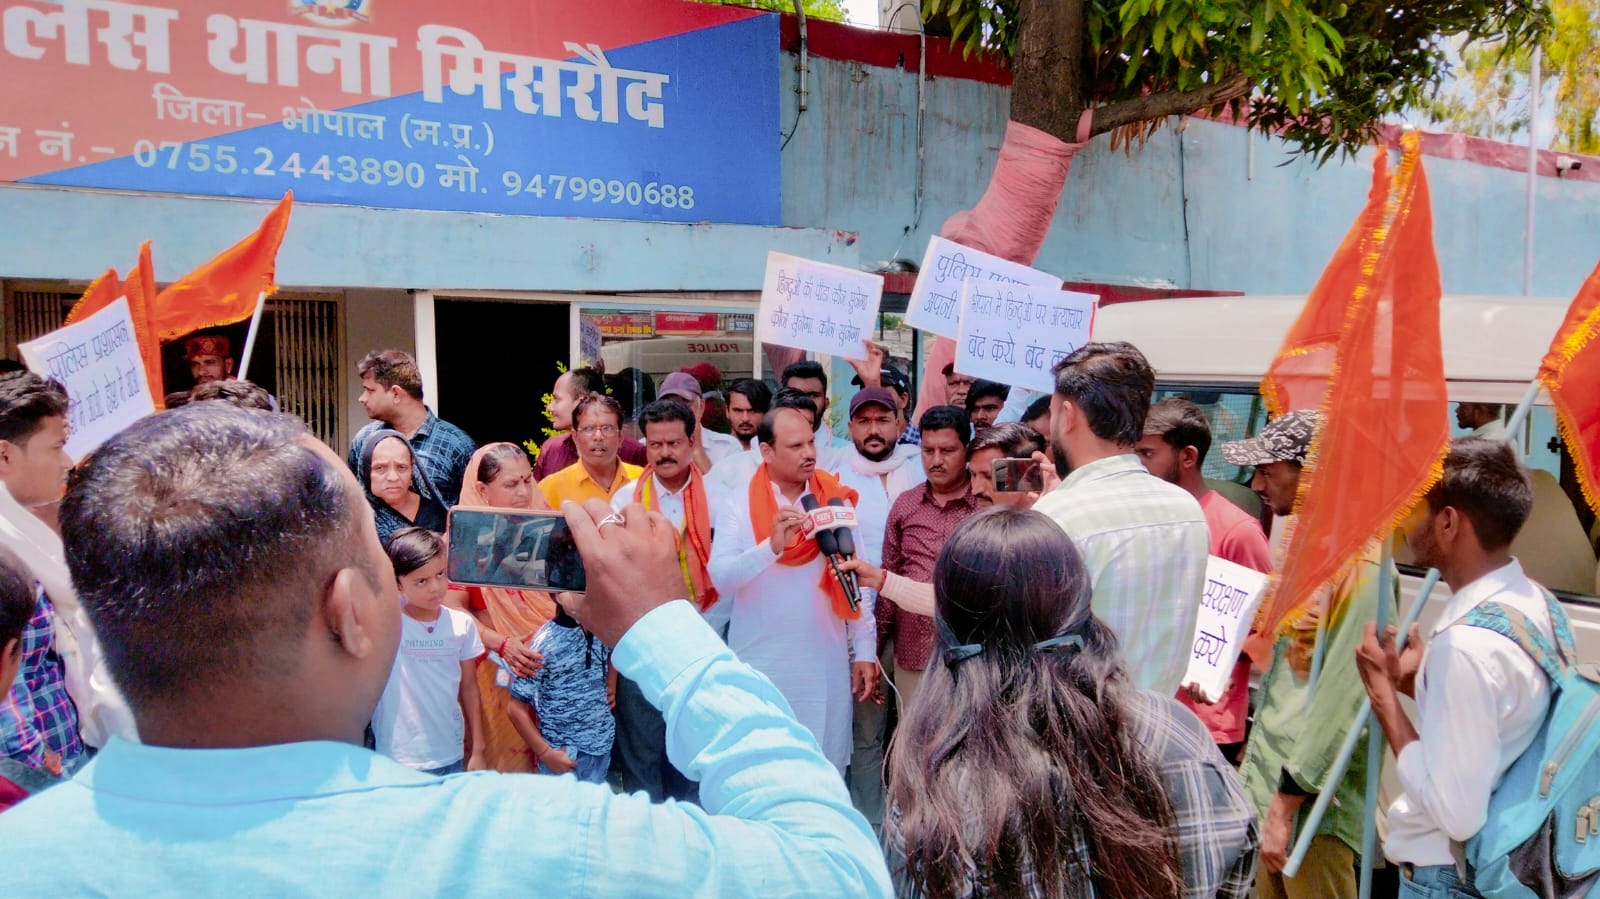 hindus protest agains islami mafiya in bhopal 